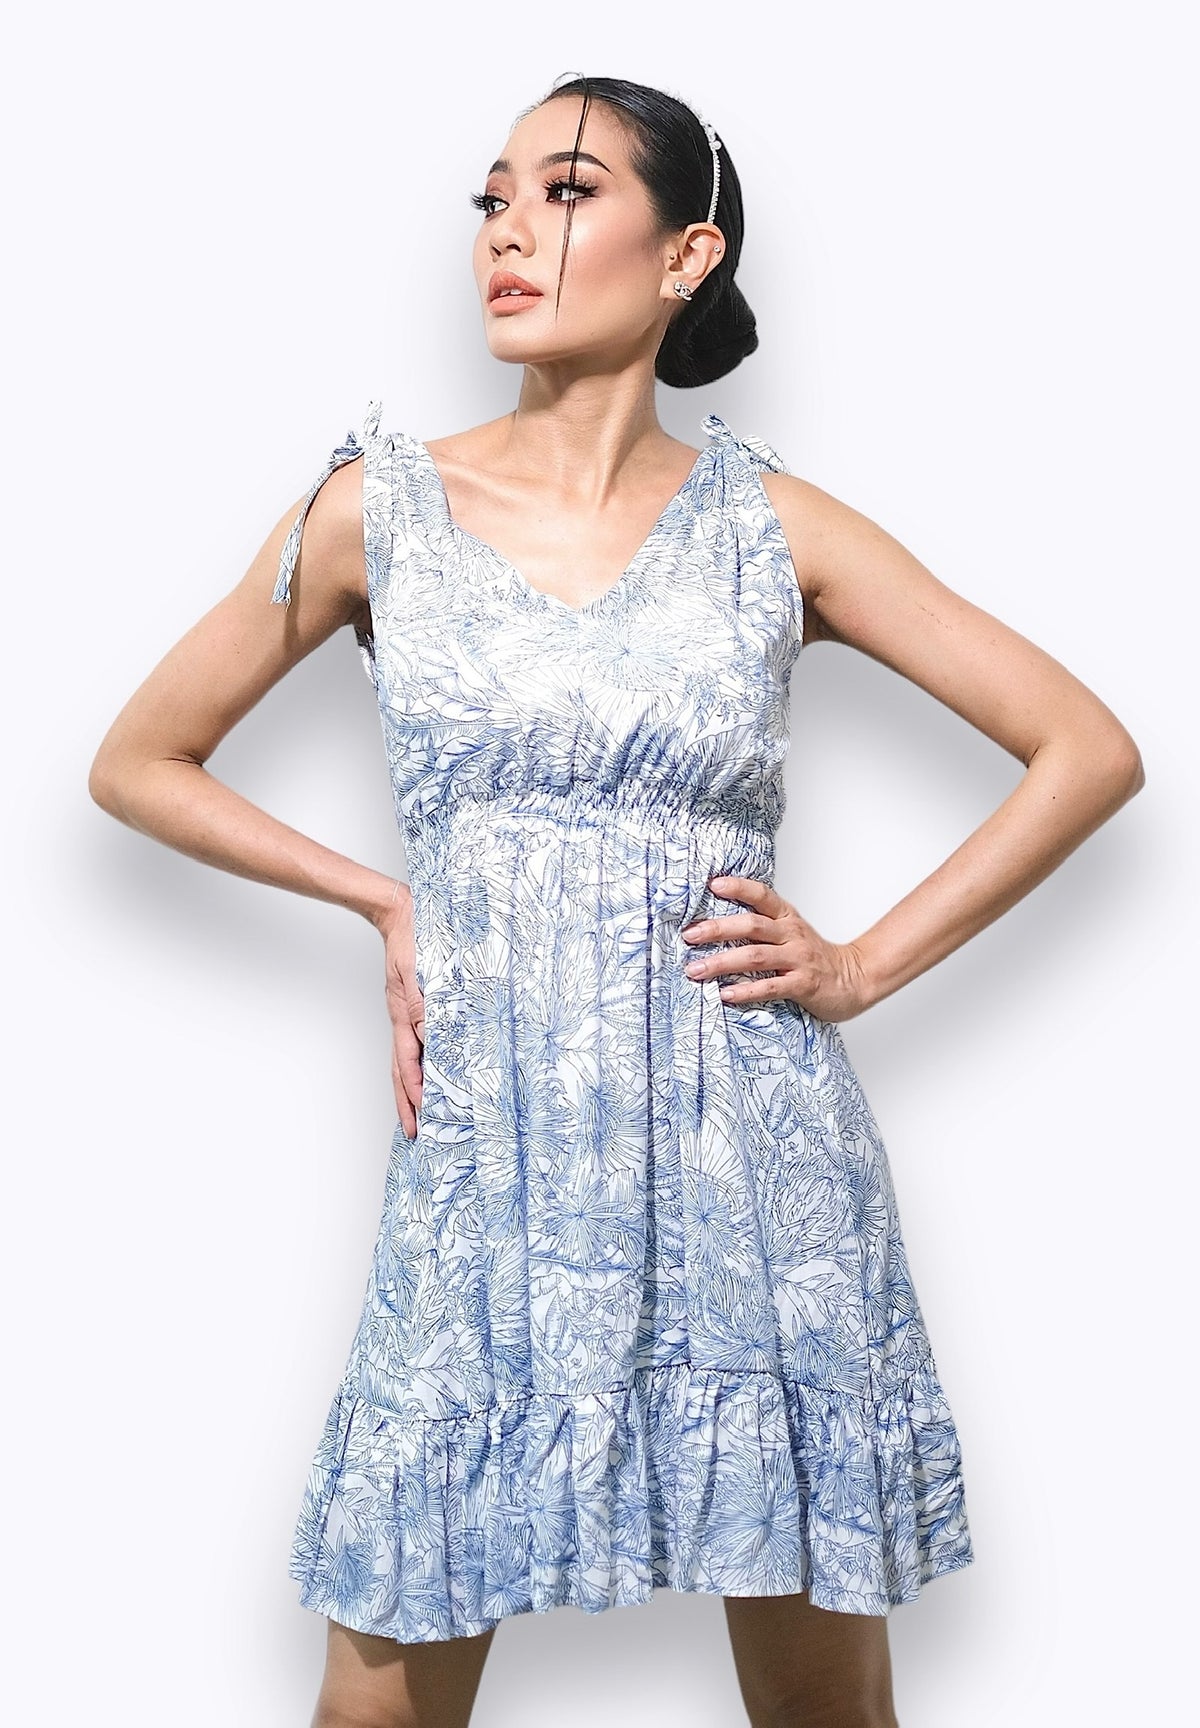 Découvrez cette robe légère et chic pour femme, disponible exclusivement en ligne au Québec. Tailles XS-XXL disponibles pour une élégance estivale quotidienne.